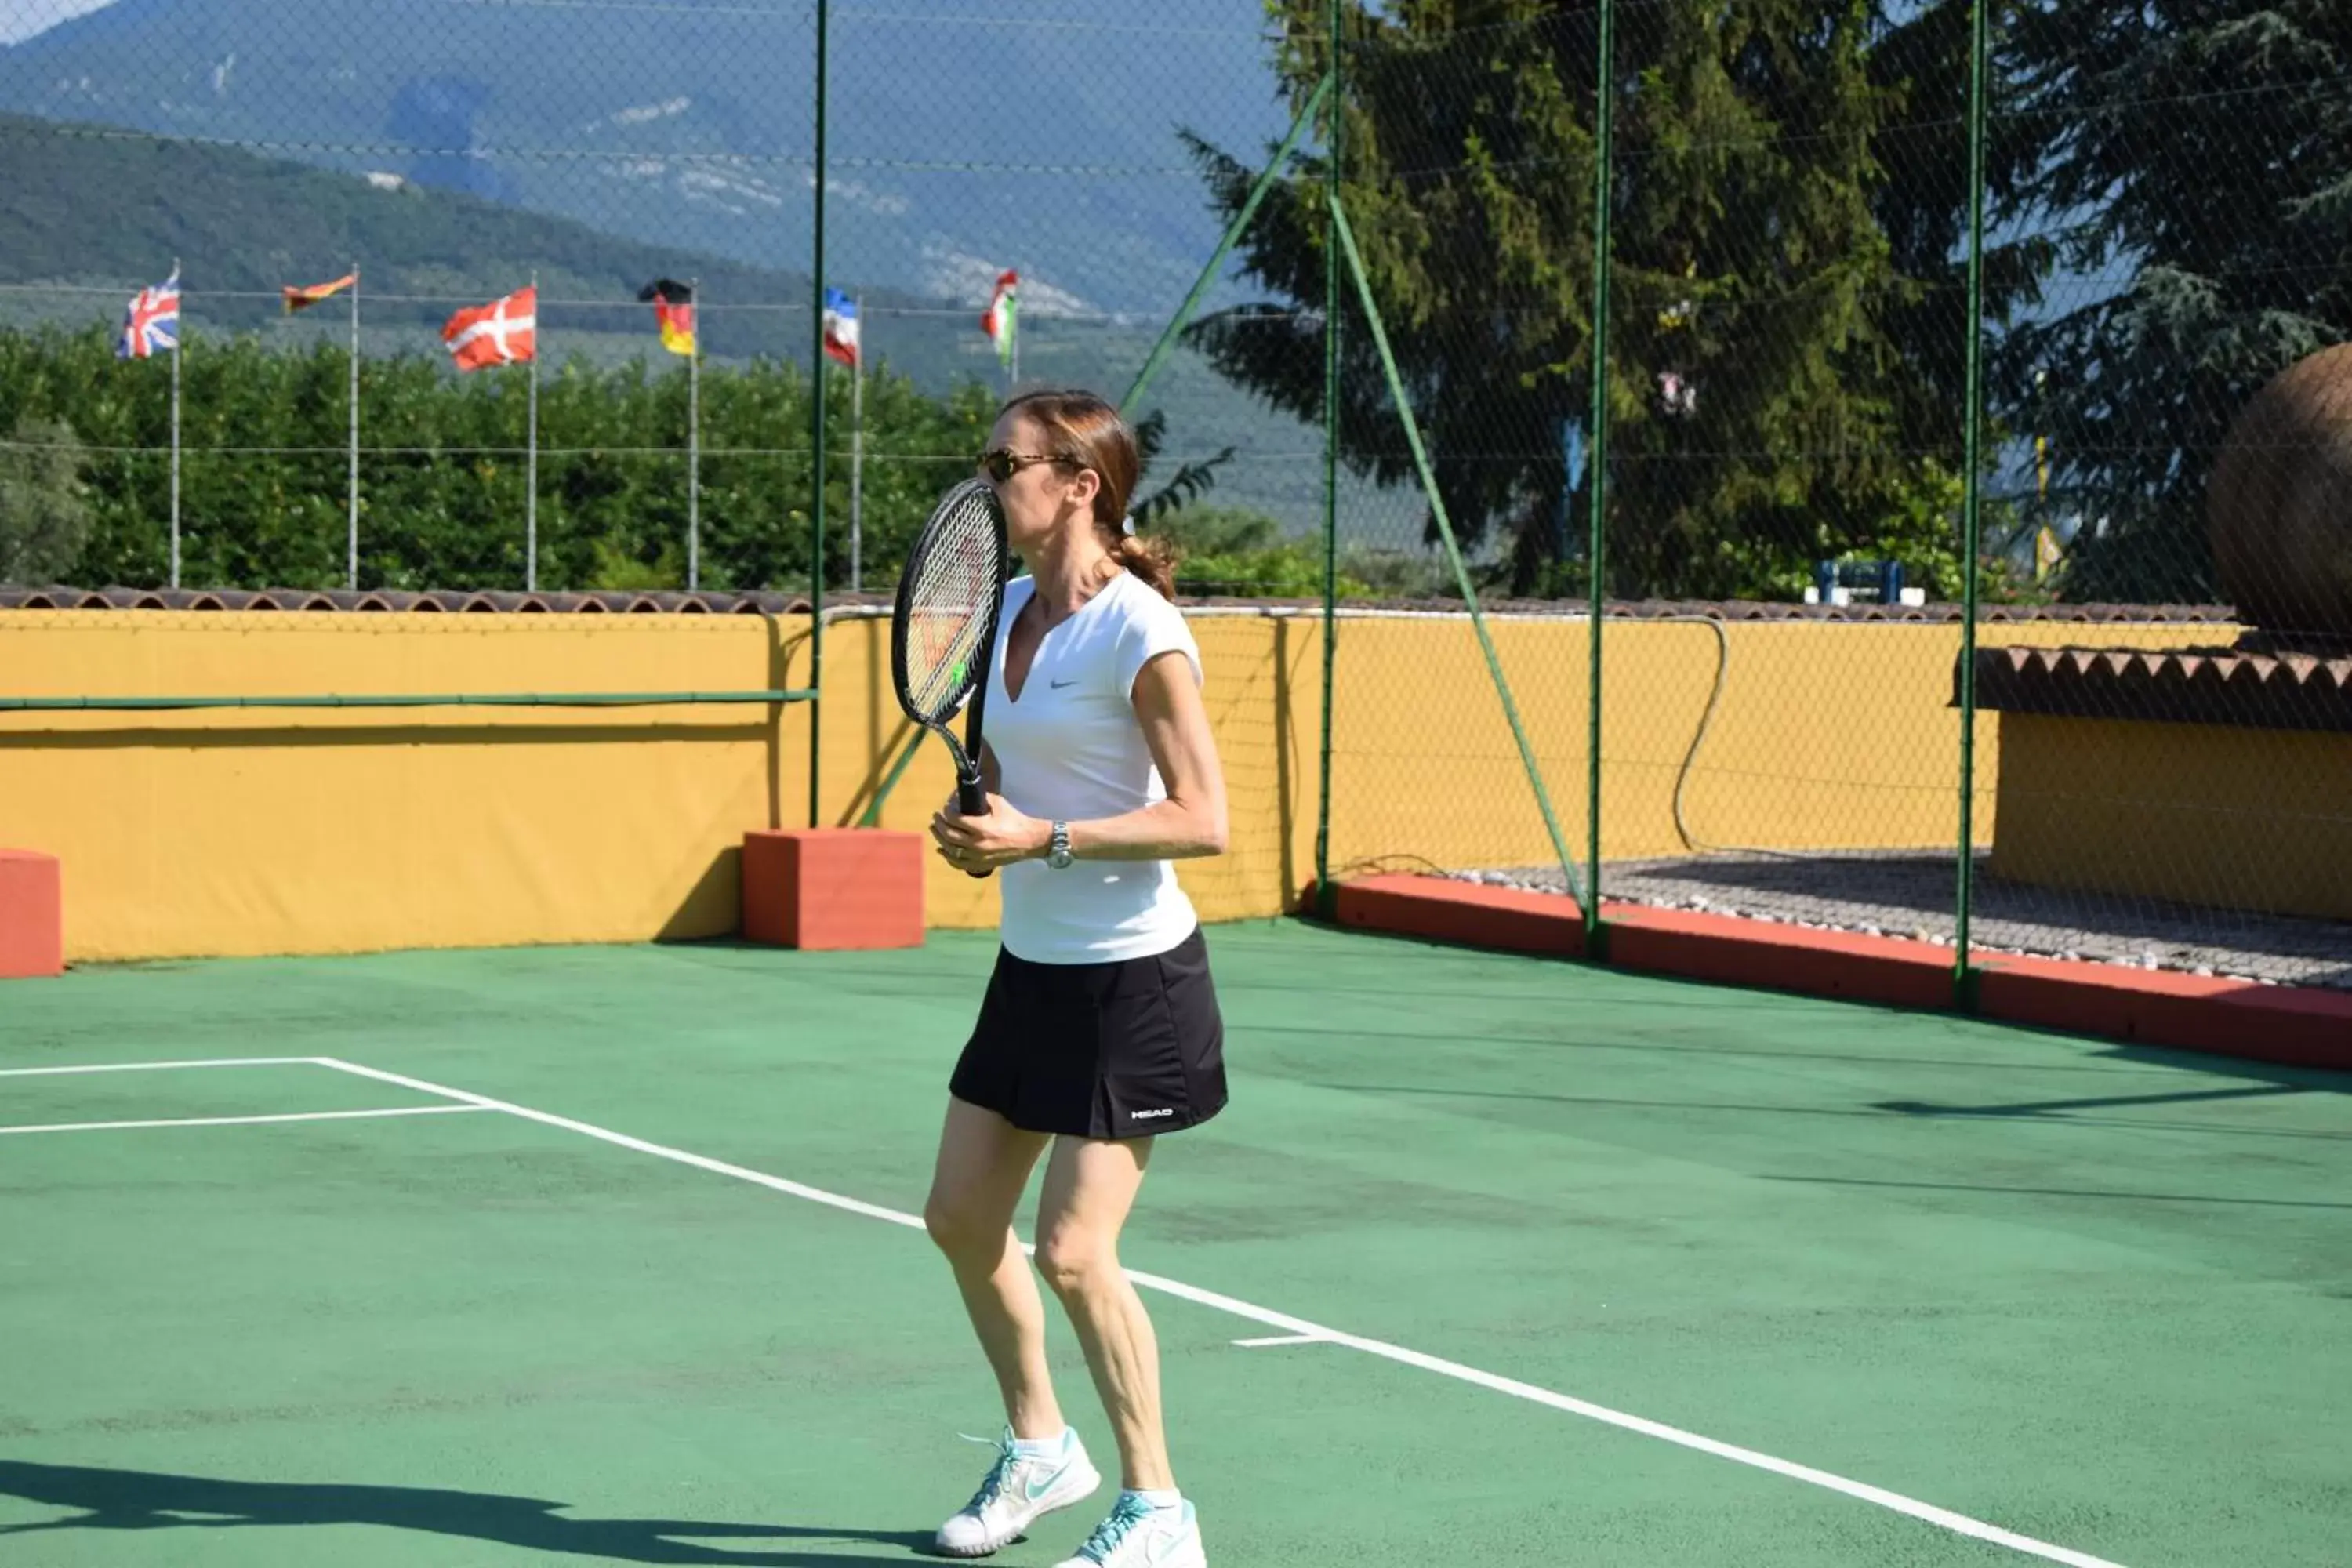 Tennis/Squash in Residenza Le Due Torri